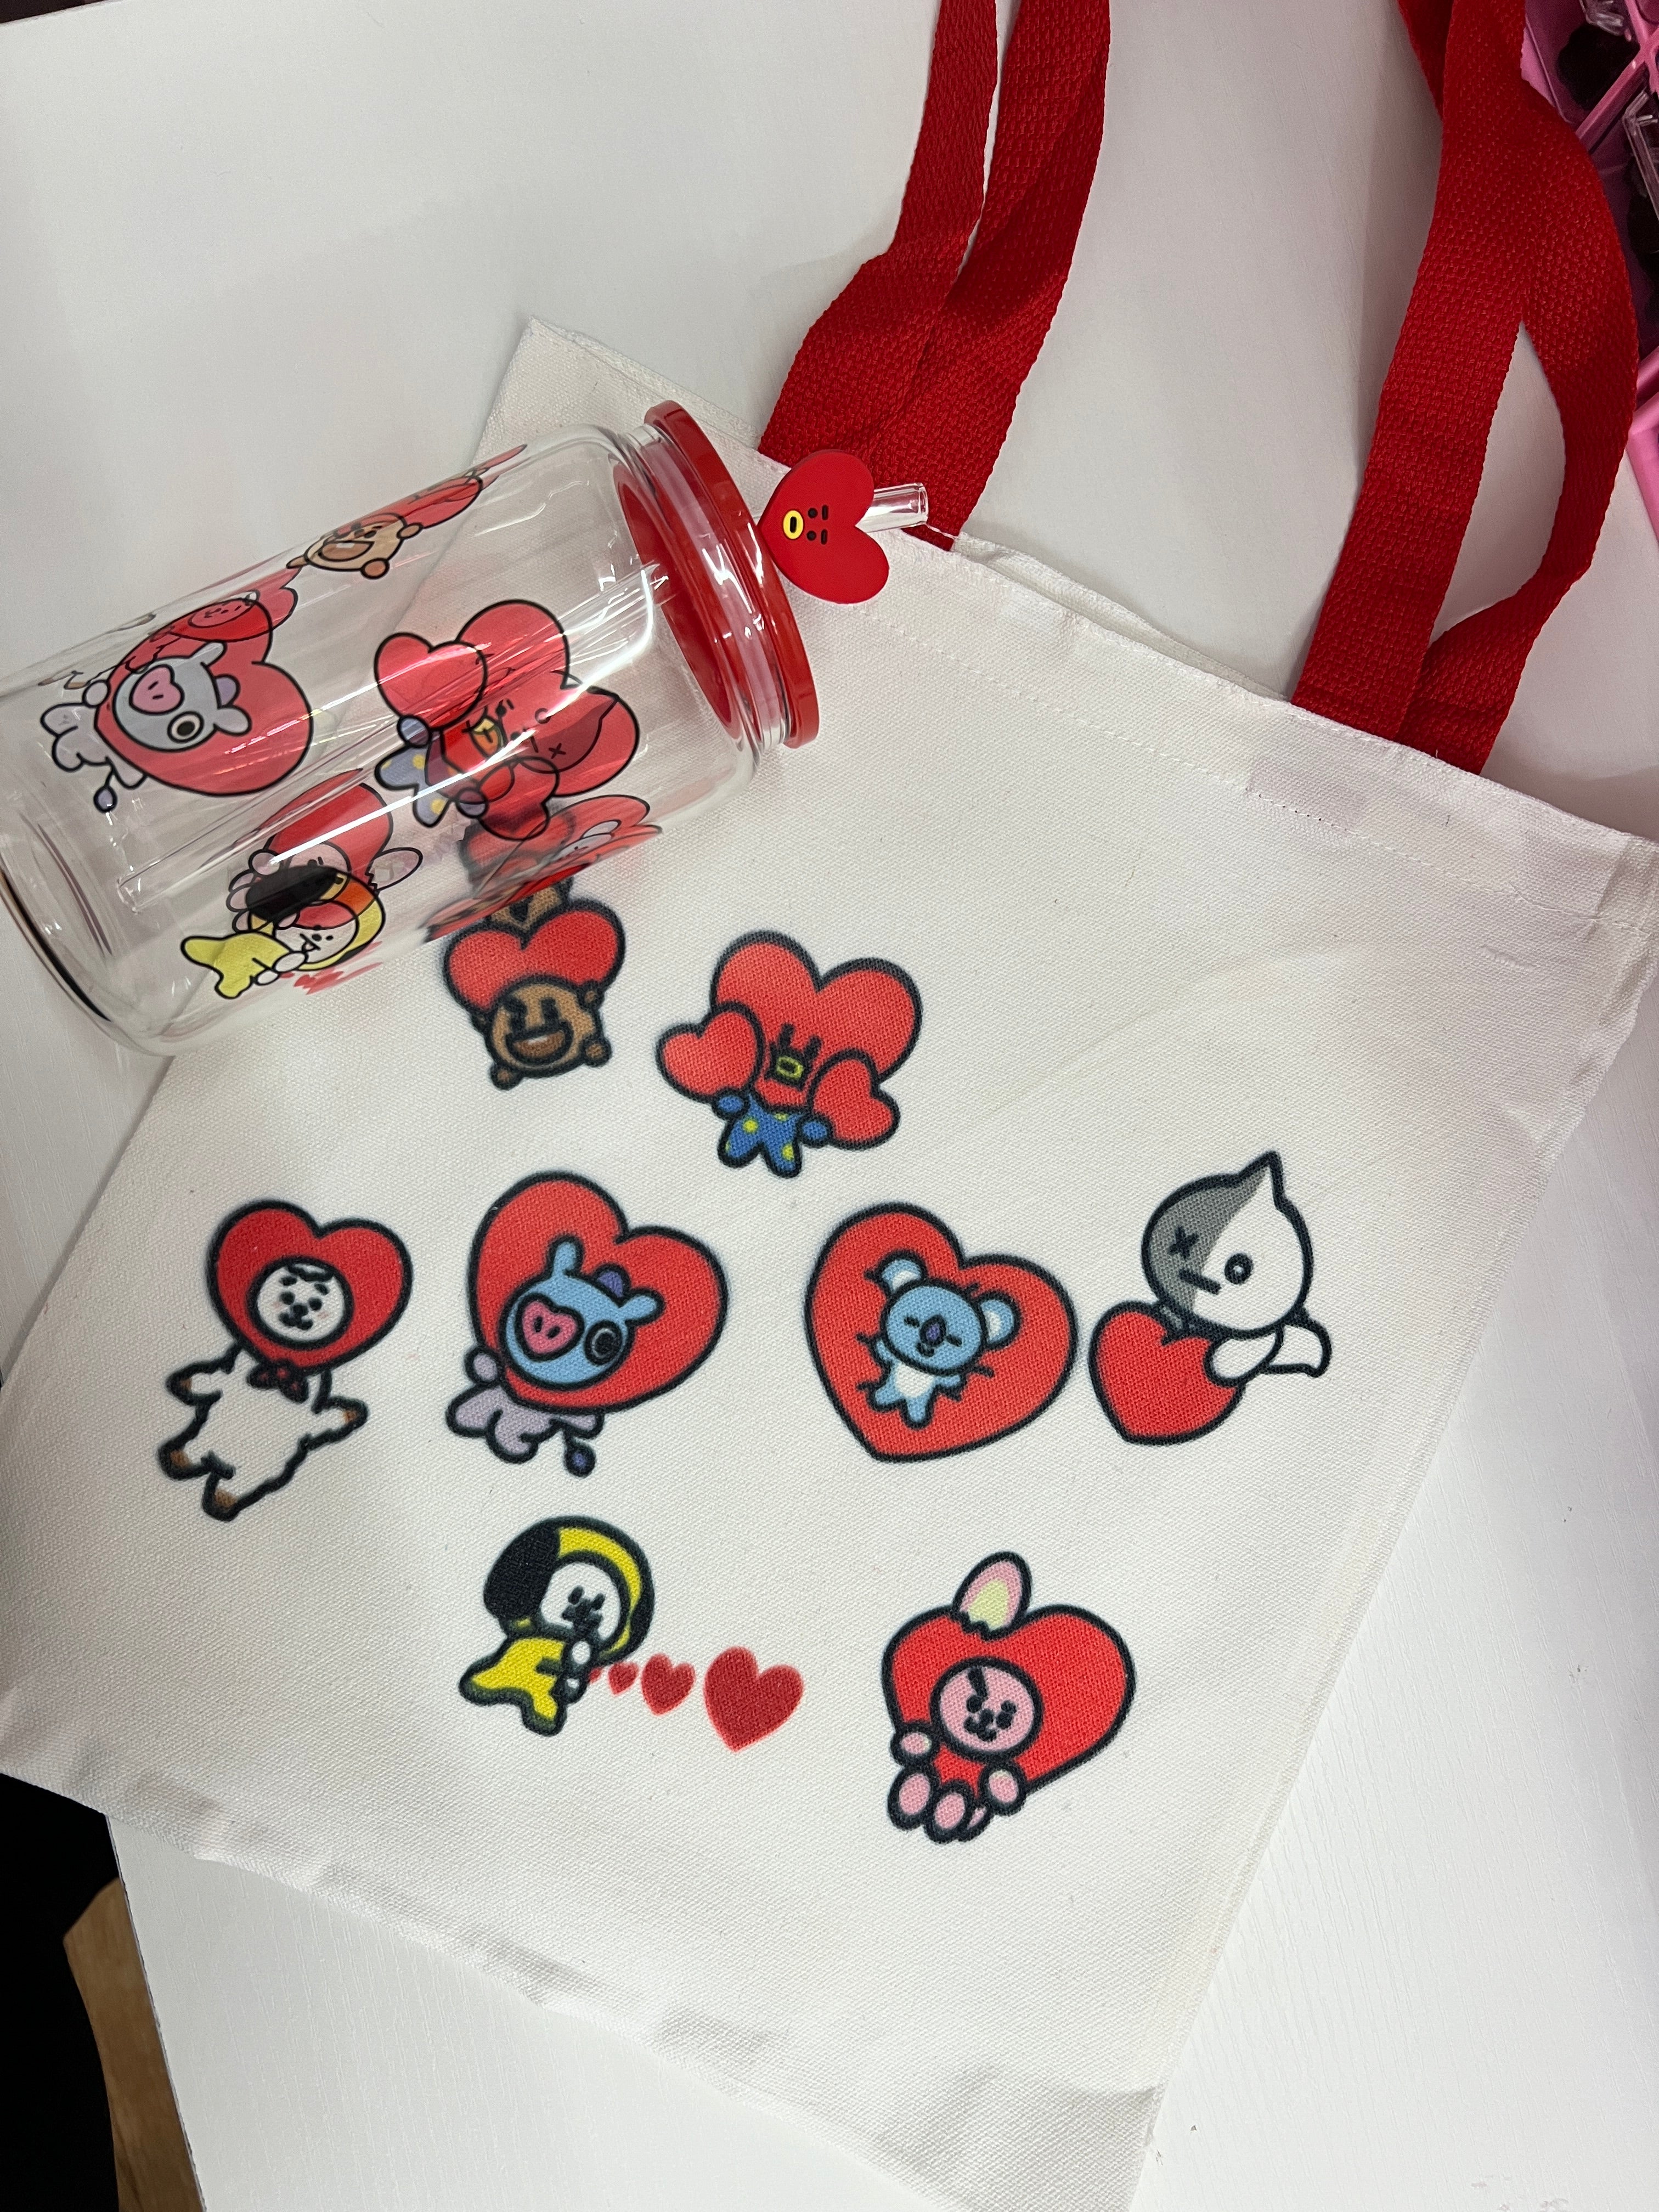 Bts Valentine’s Day gift box